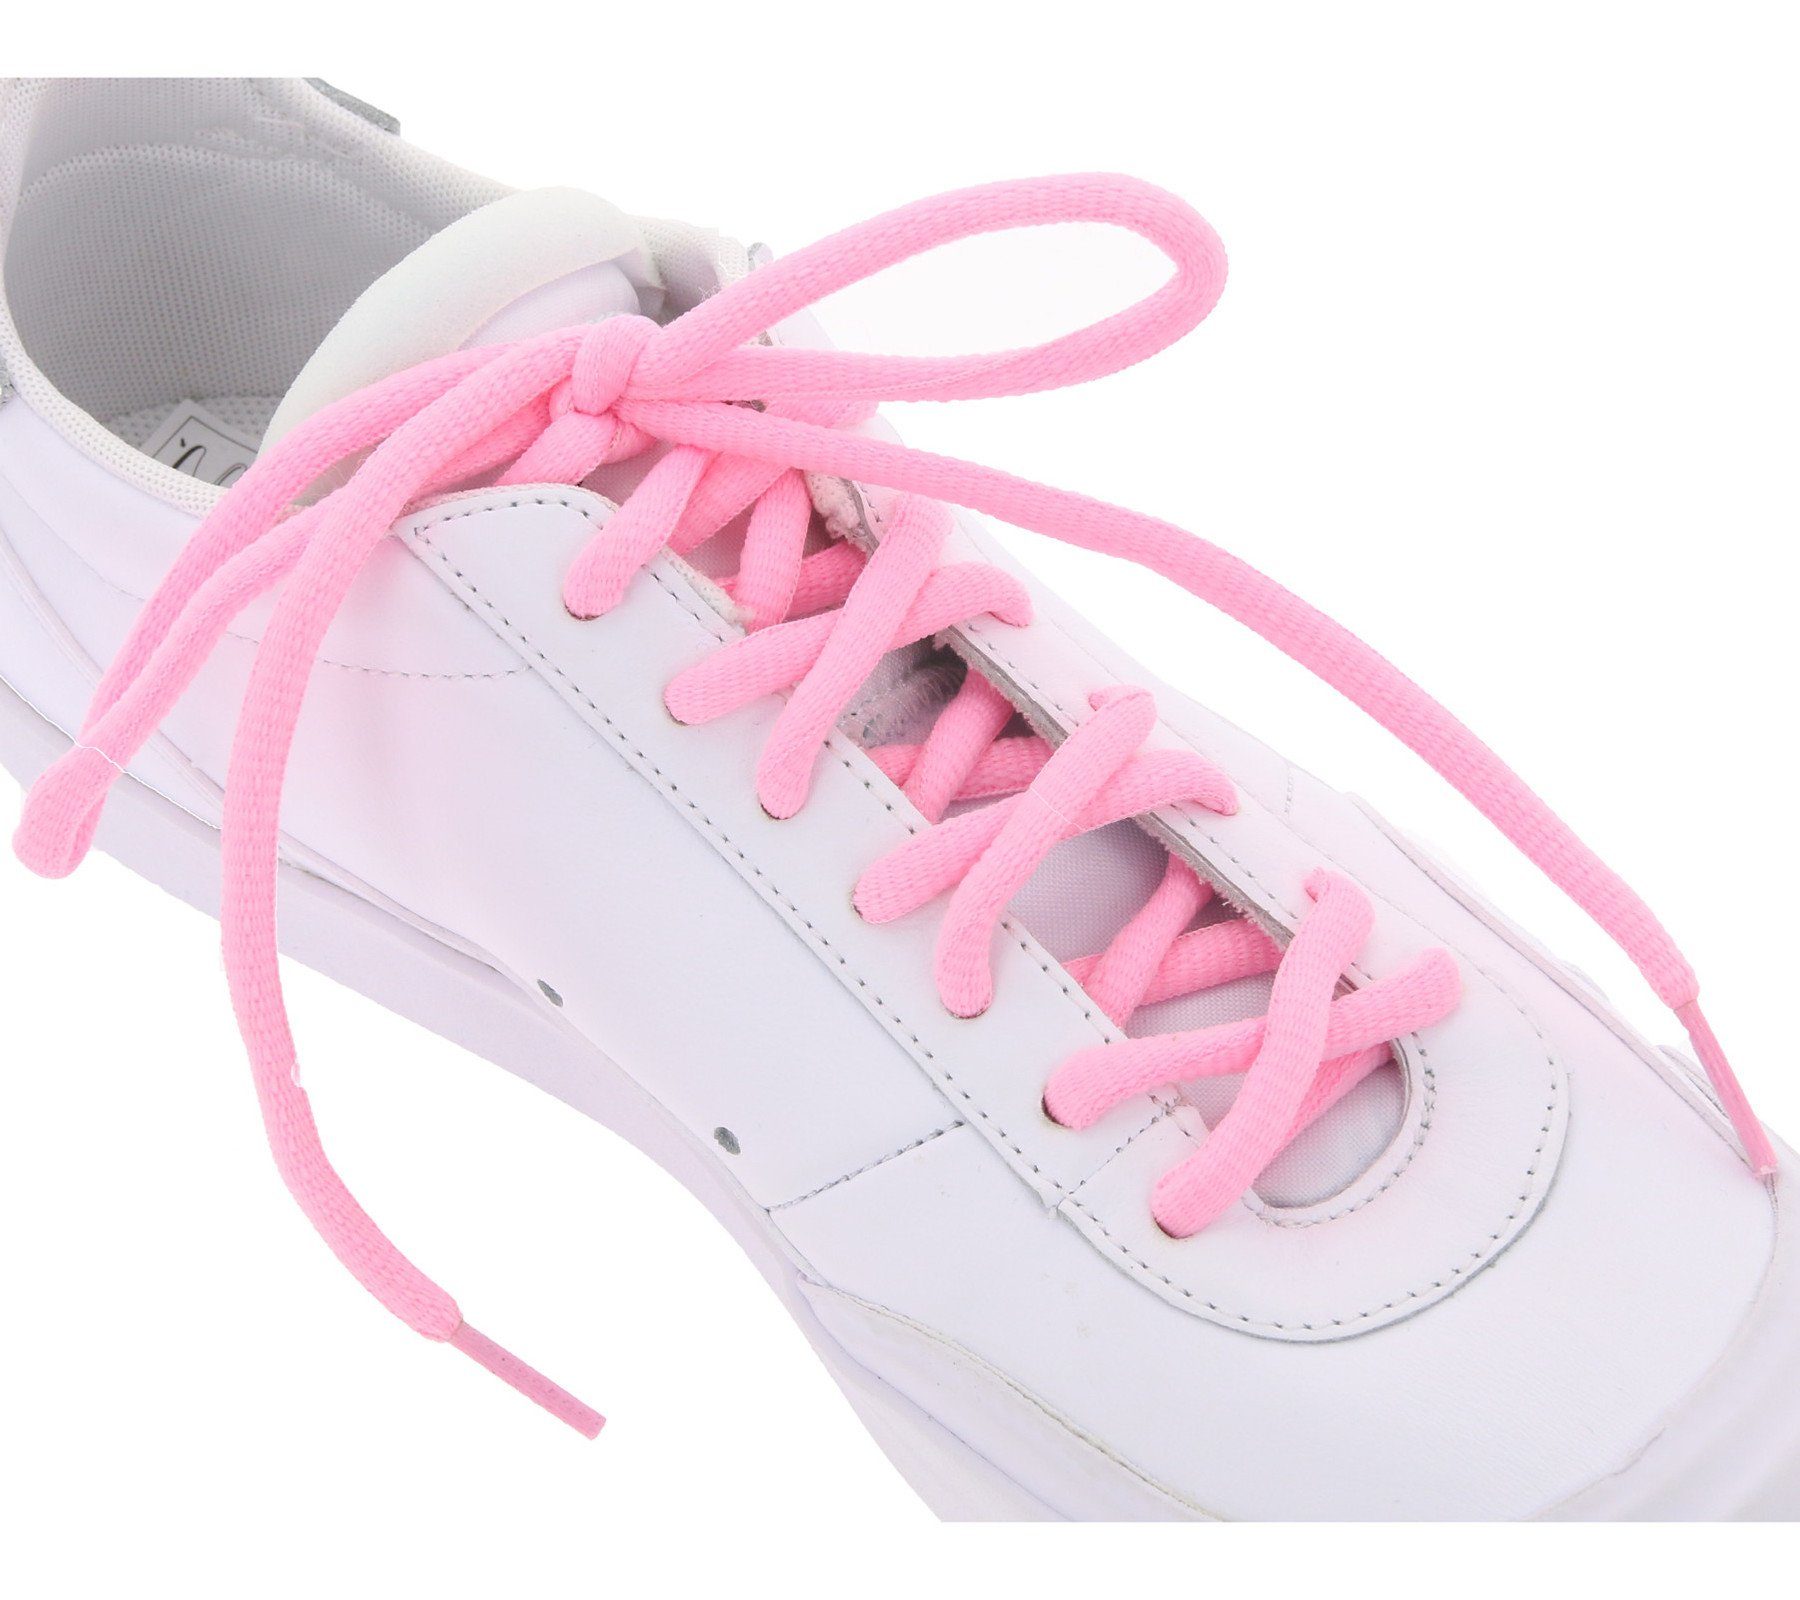 Schnürsenkel Schuhbänder Schnürsenkel TubeLaces Pink Schnürbänder Tubelaces Schuh neonfarbene